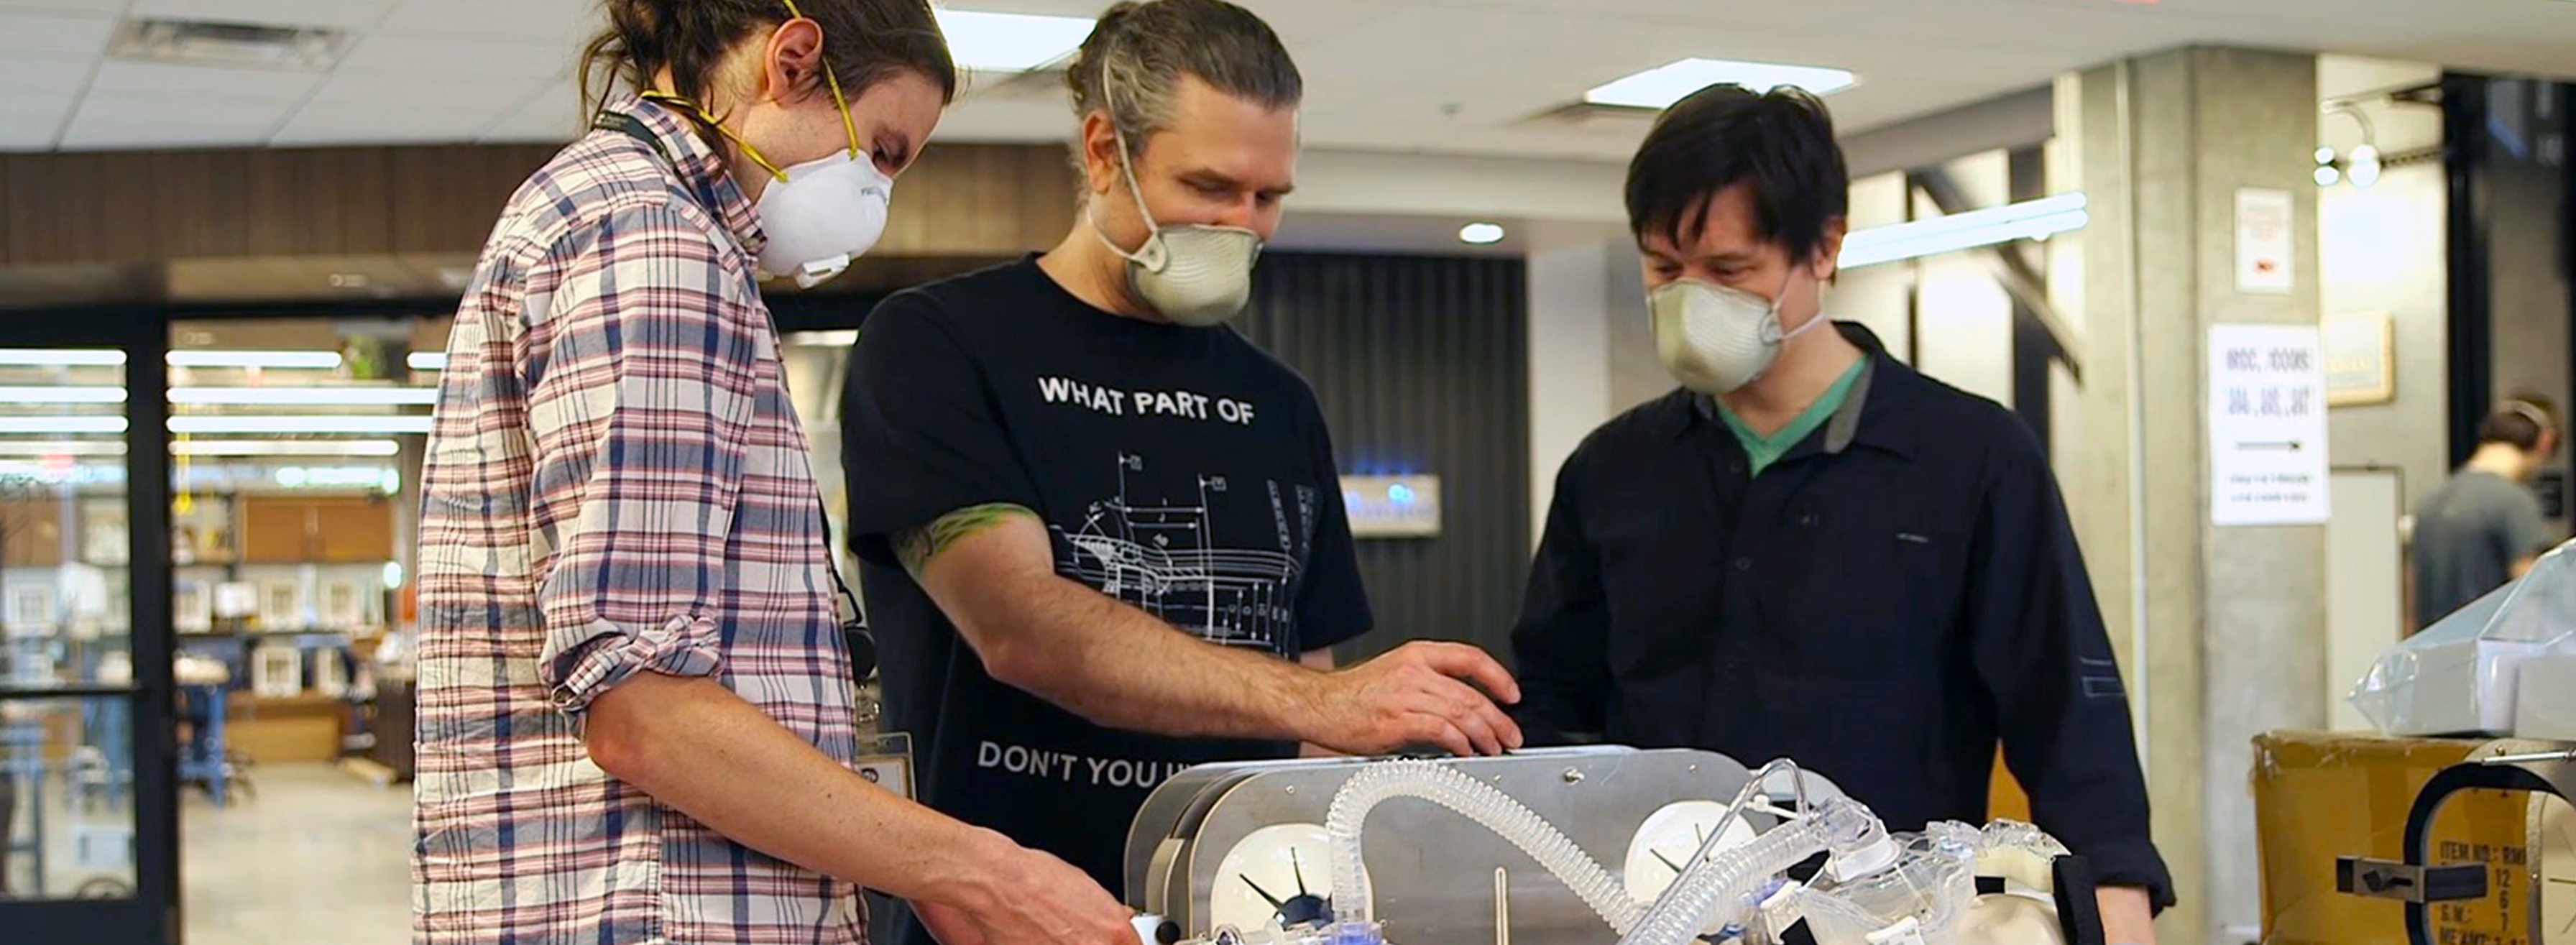 Georgia Tech Researchers creating a new ventilator